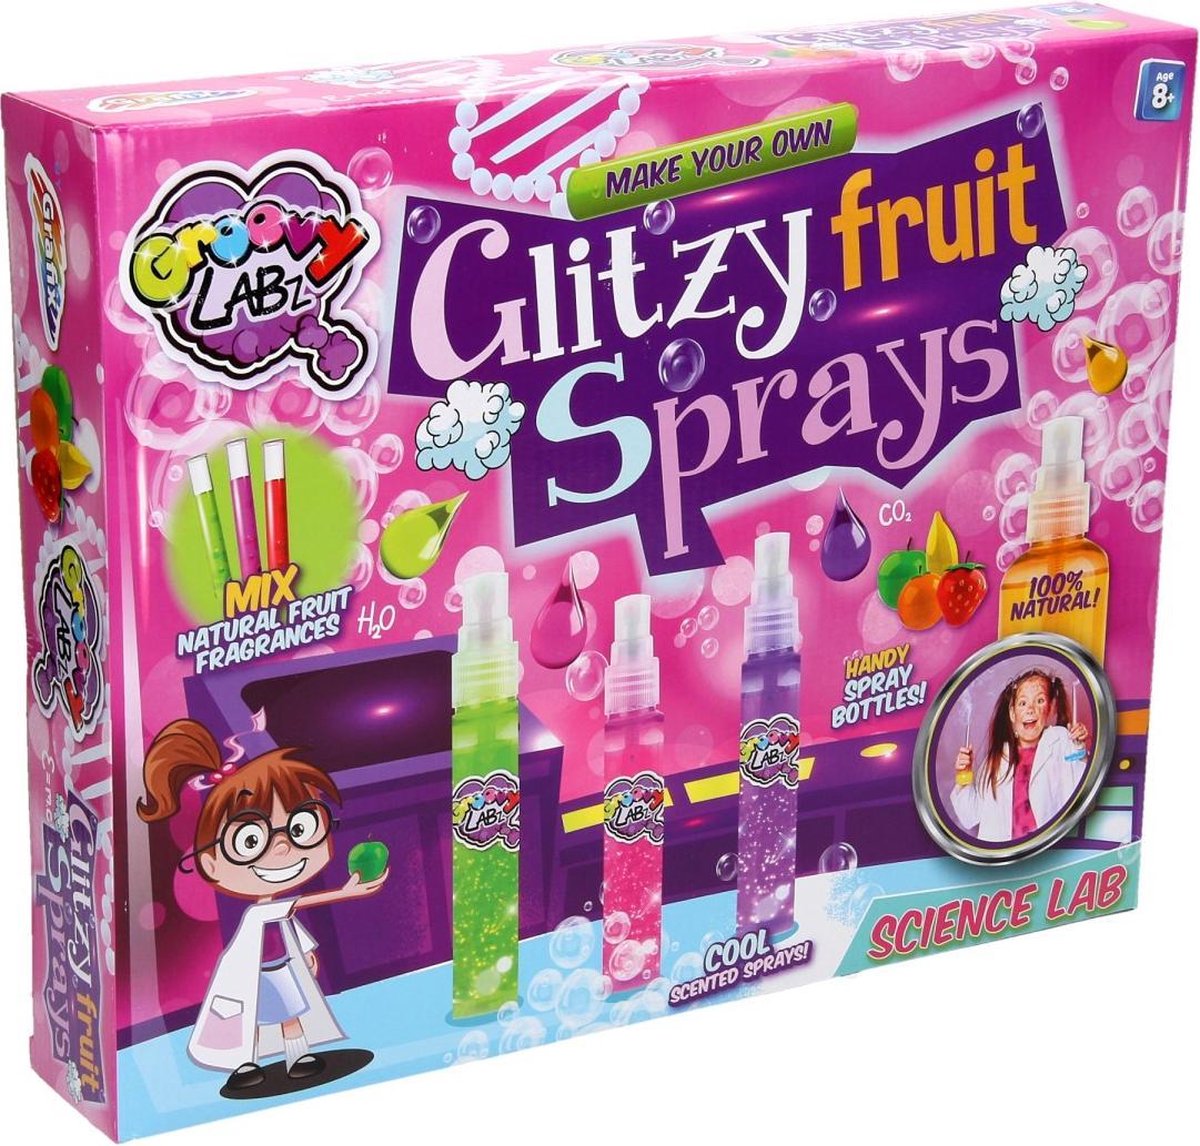 Maak je eigen Glitzy Fruit Sprays